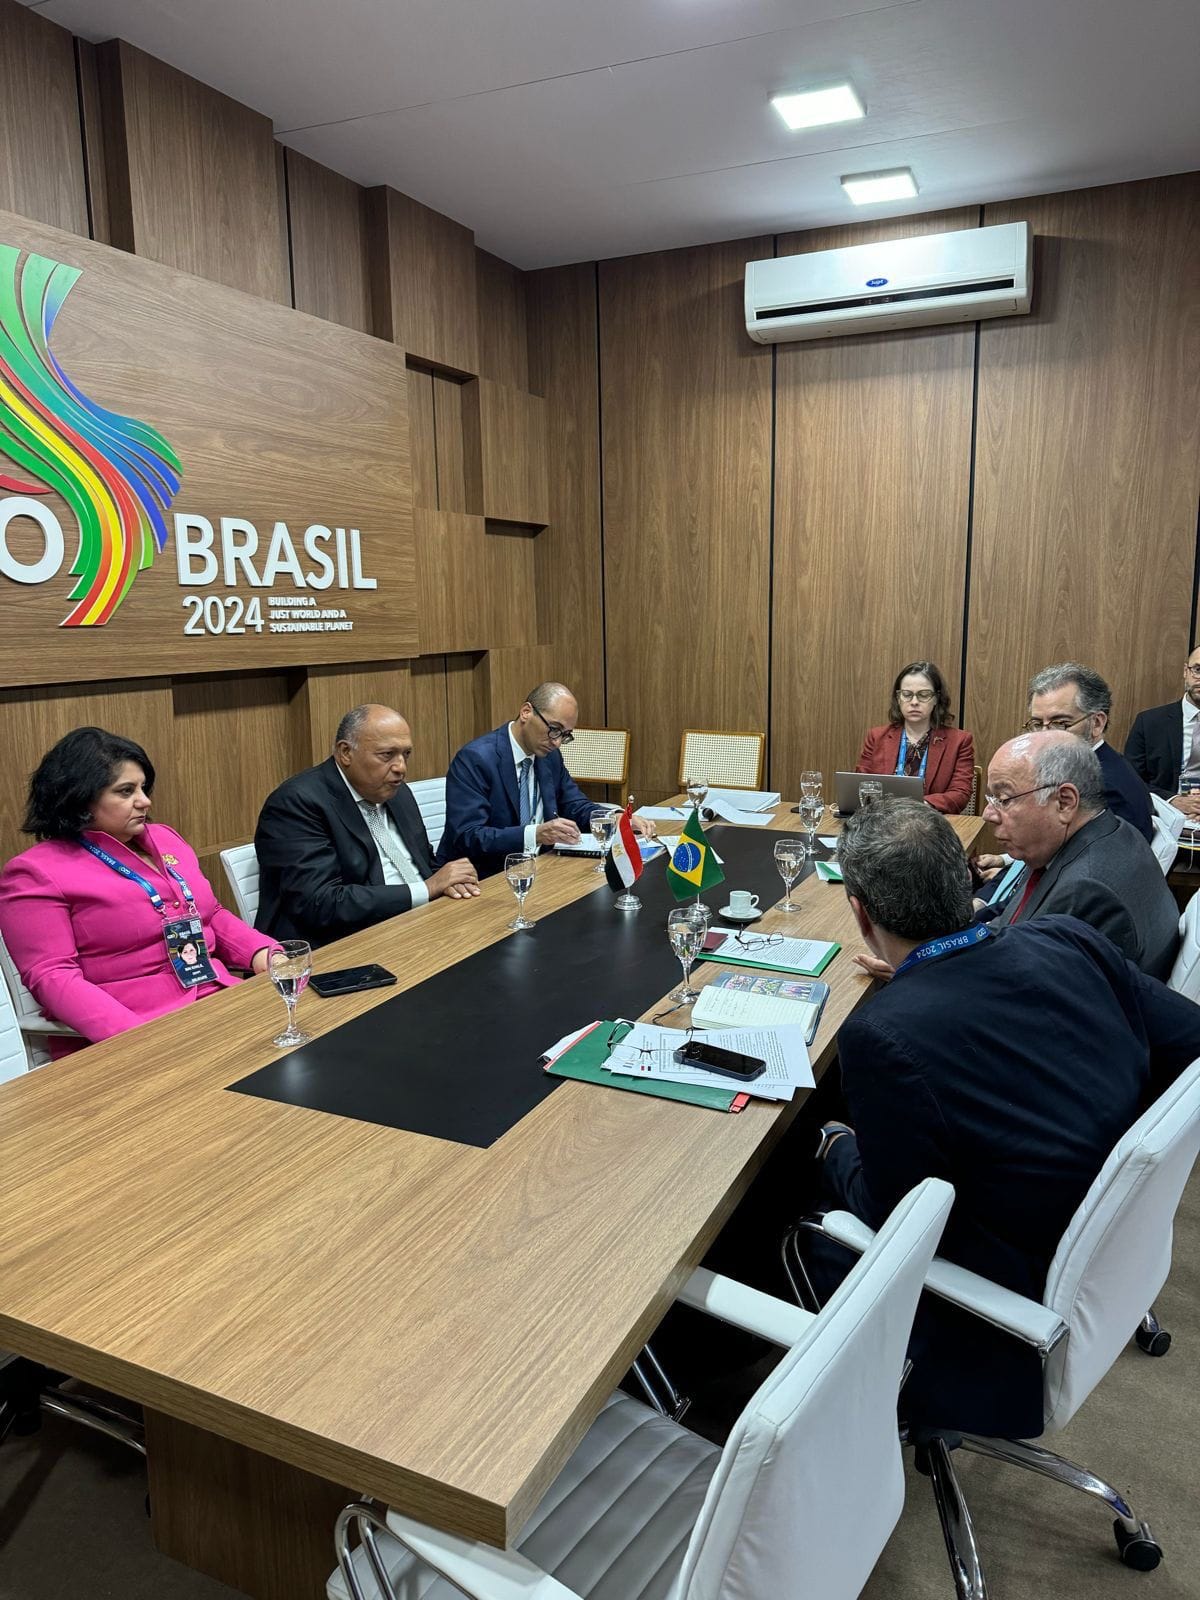 وزير الخارجية يشيد بالموقف البرازيلي الداعم للقضية الفلسطينية 2